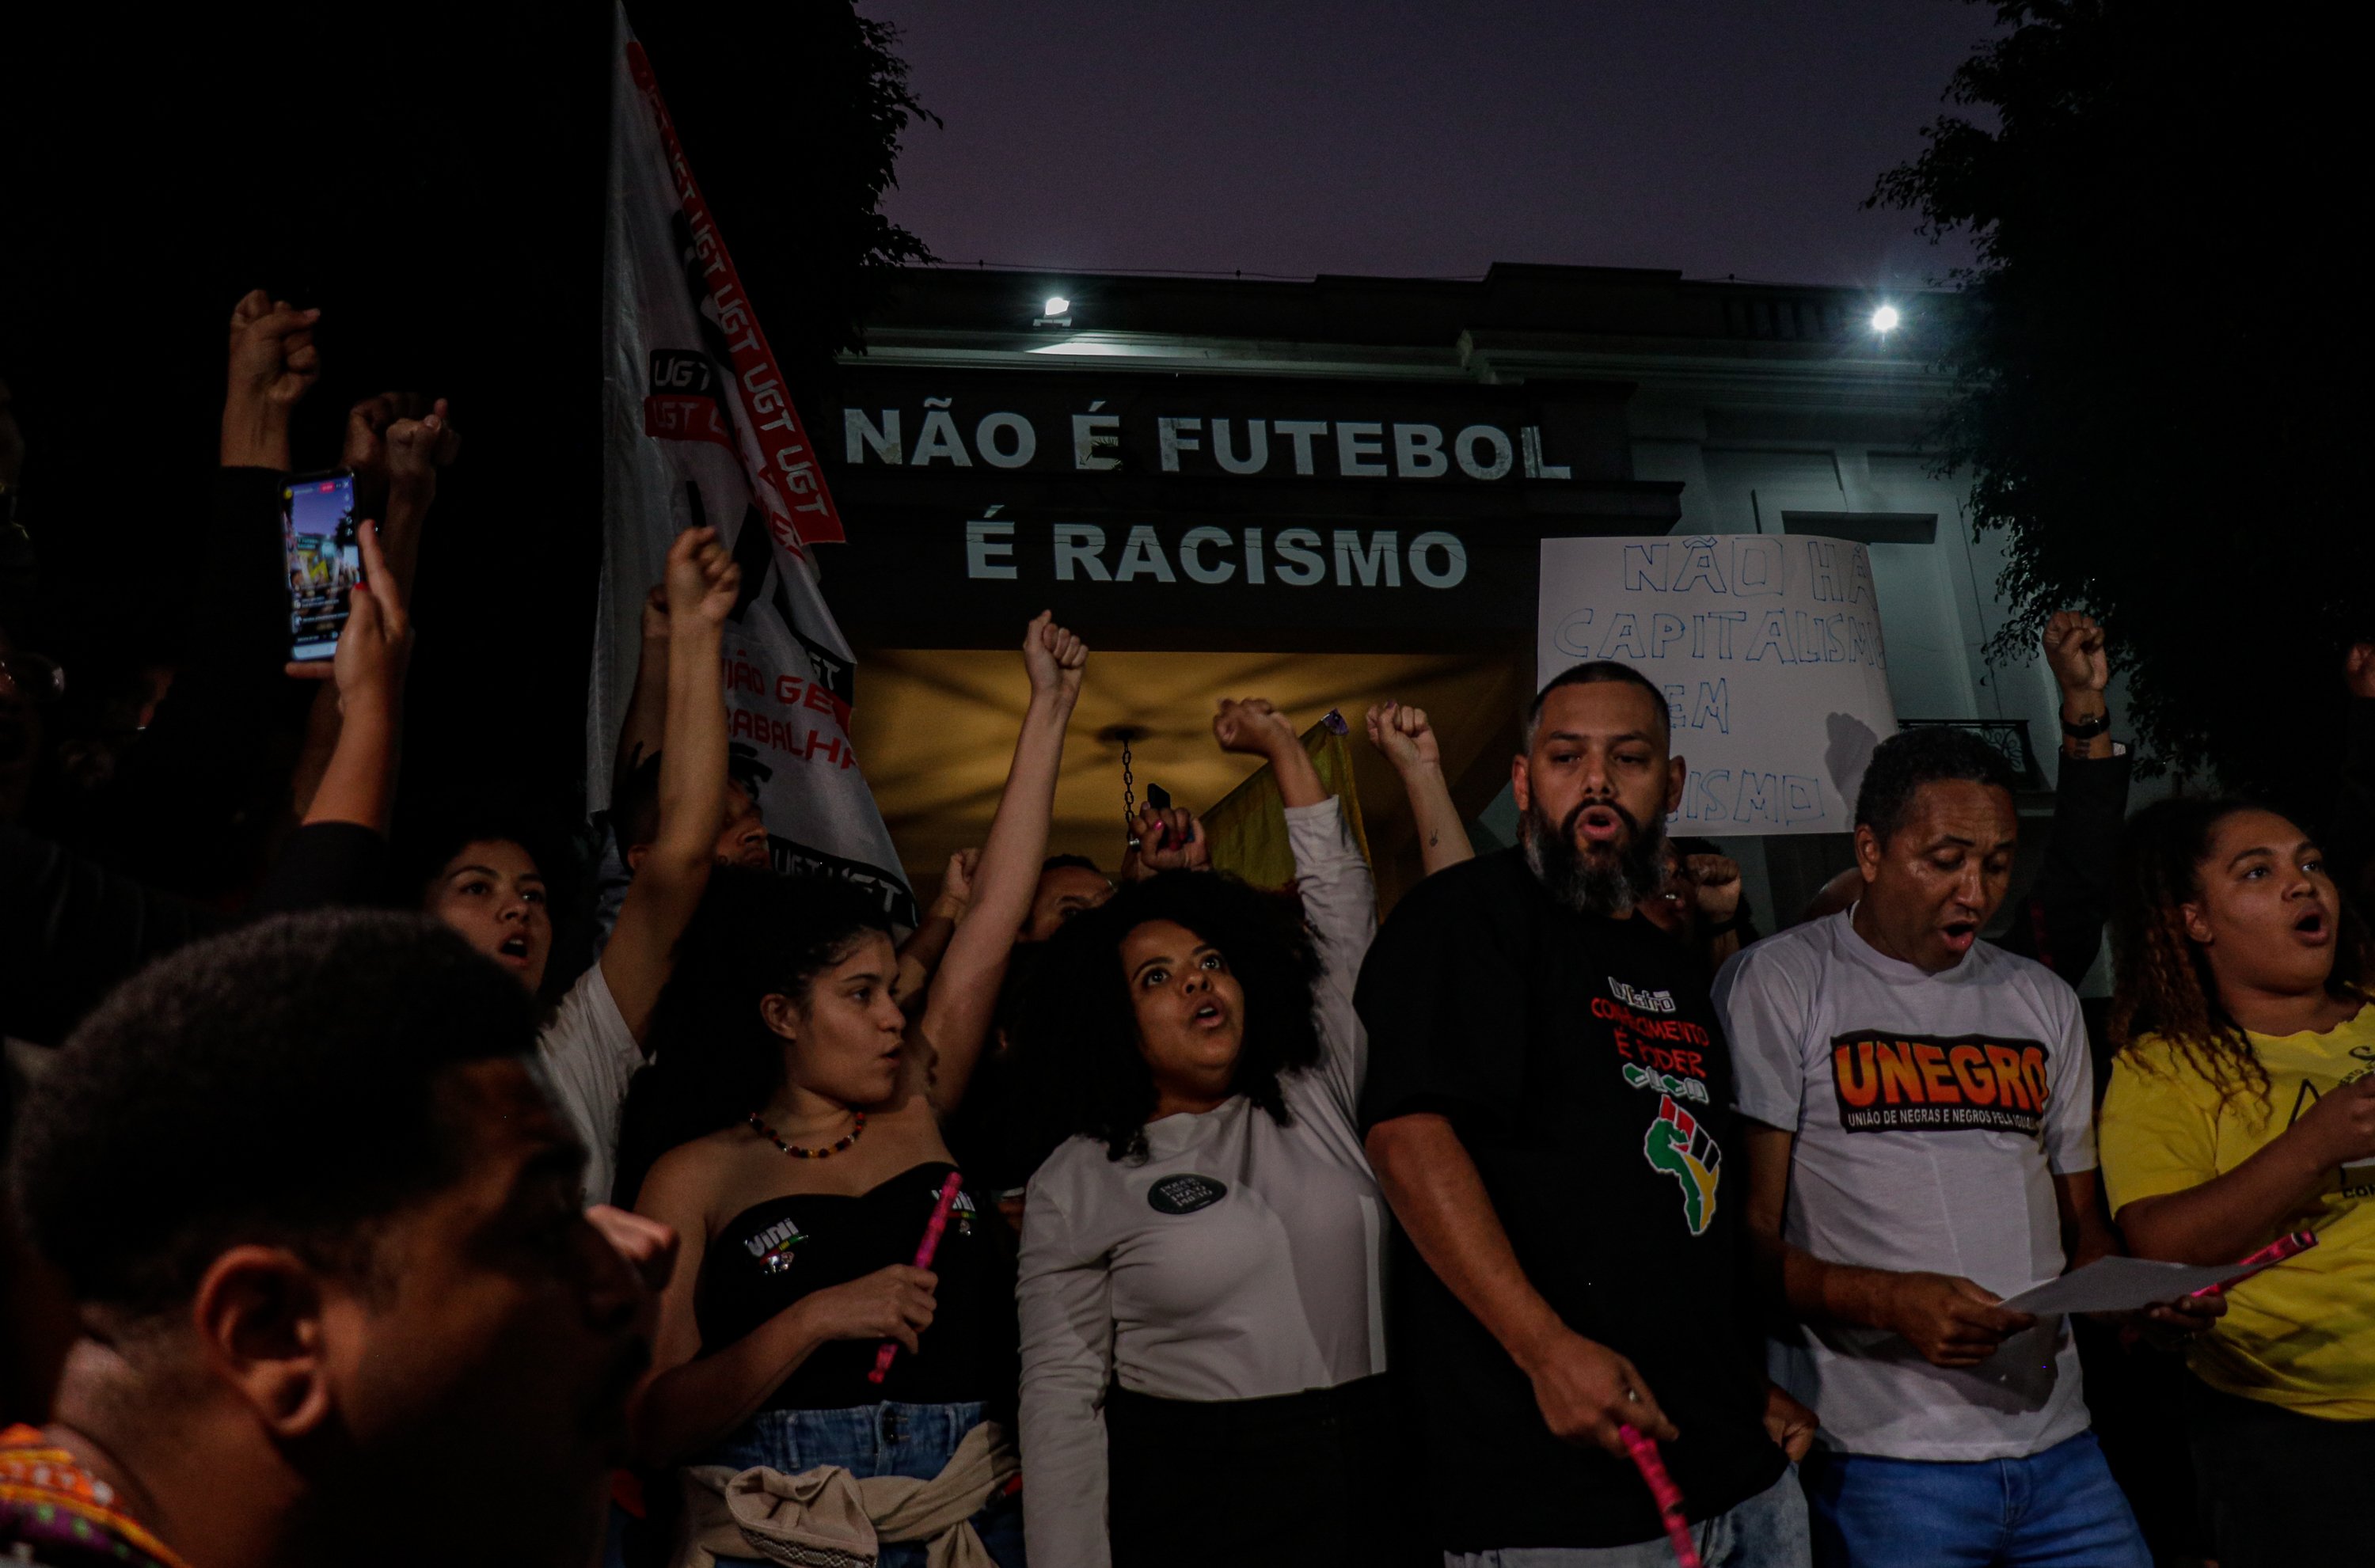 Manifestació davant el consolat espanyol a São Paulo contra l'"Espanya racista"